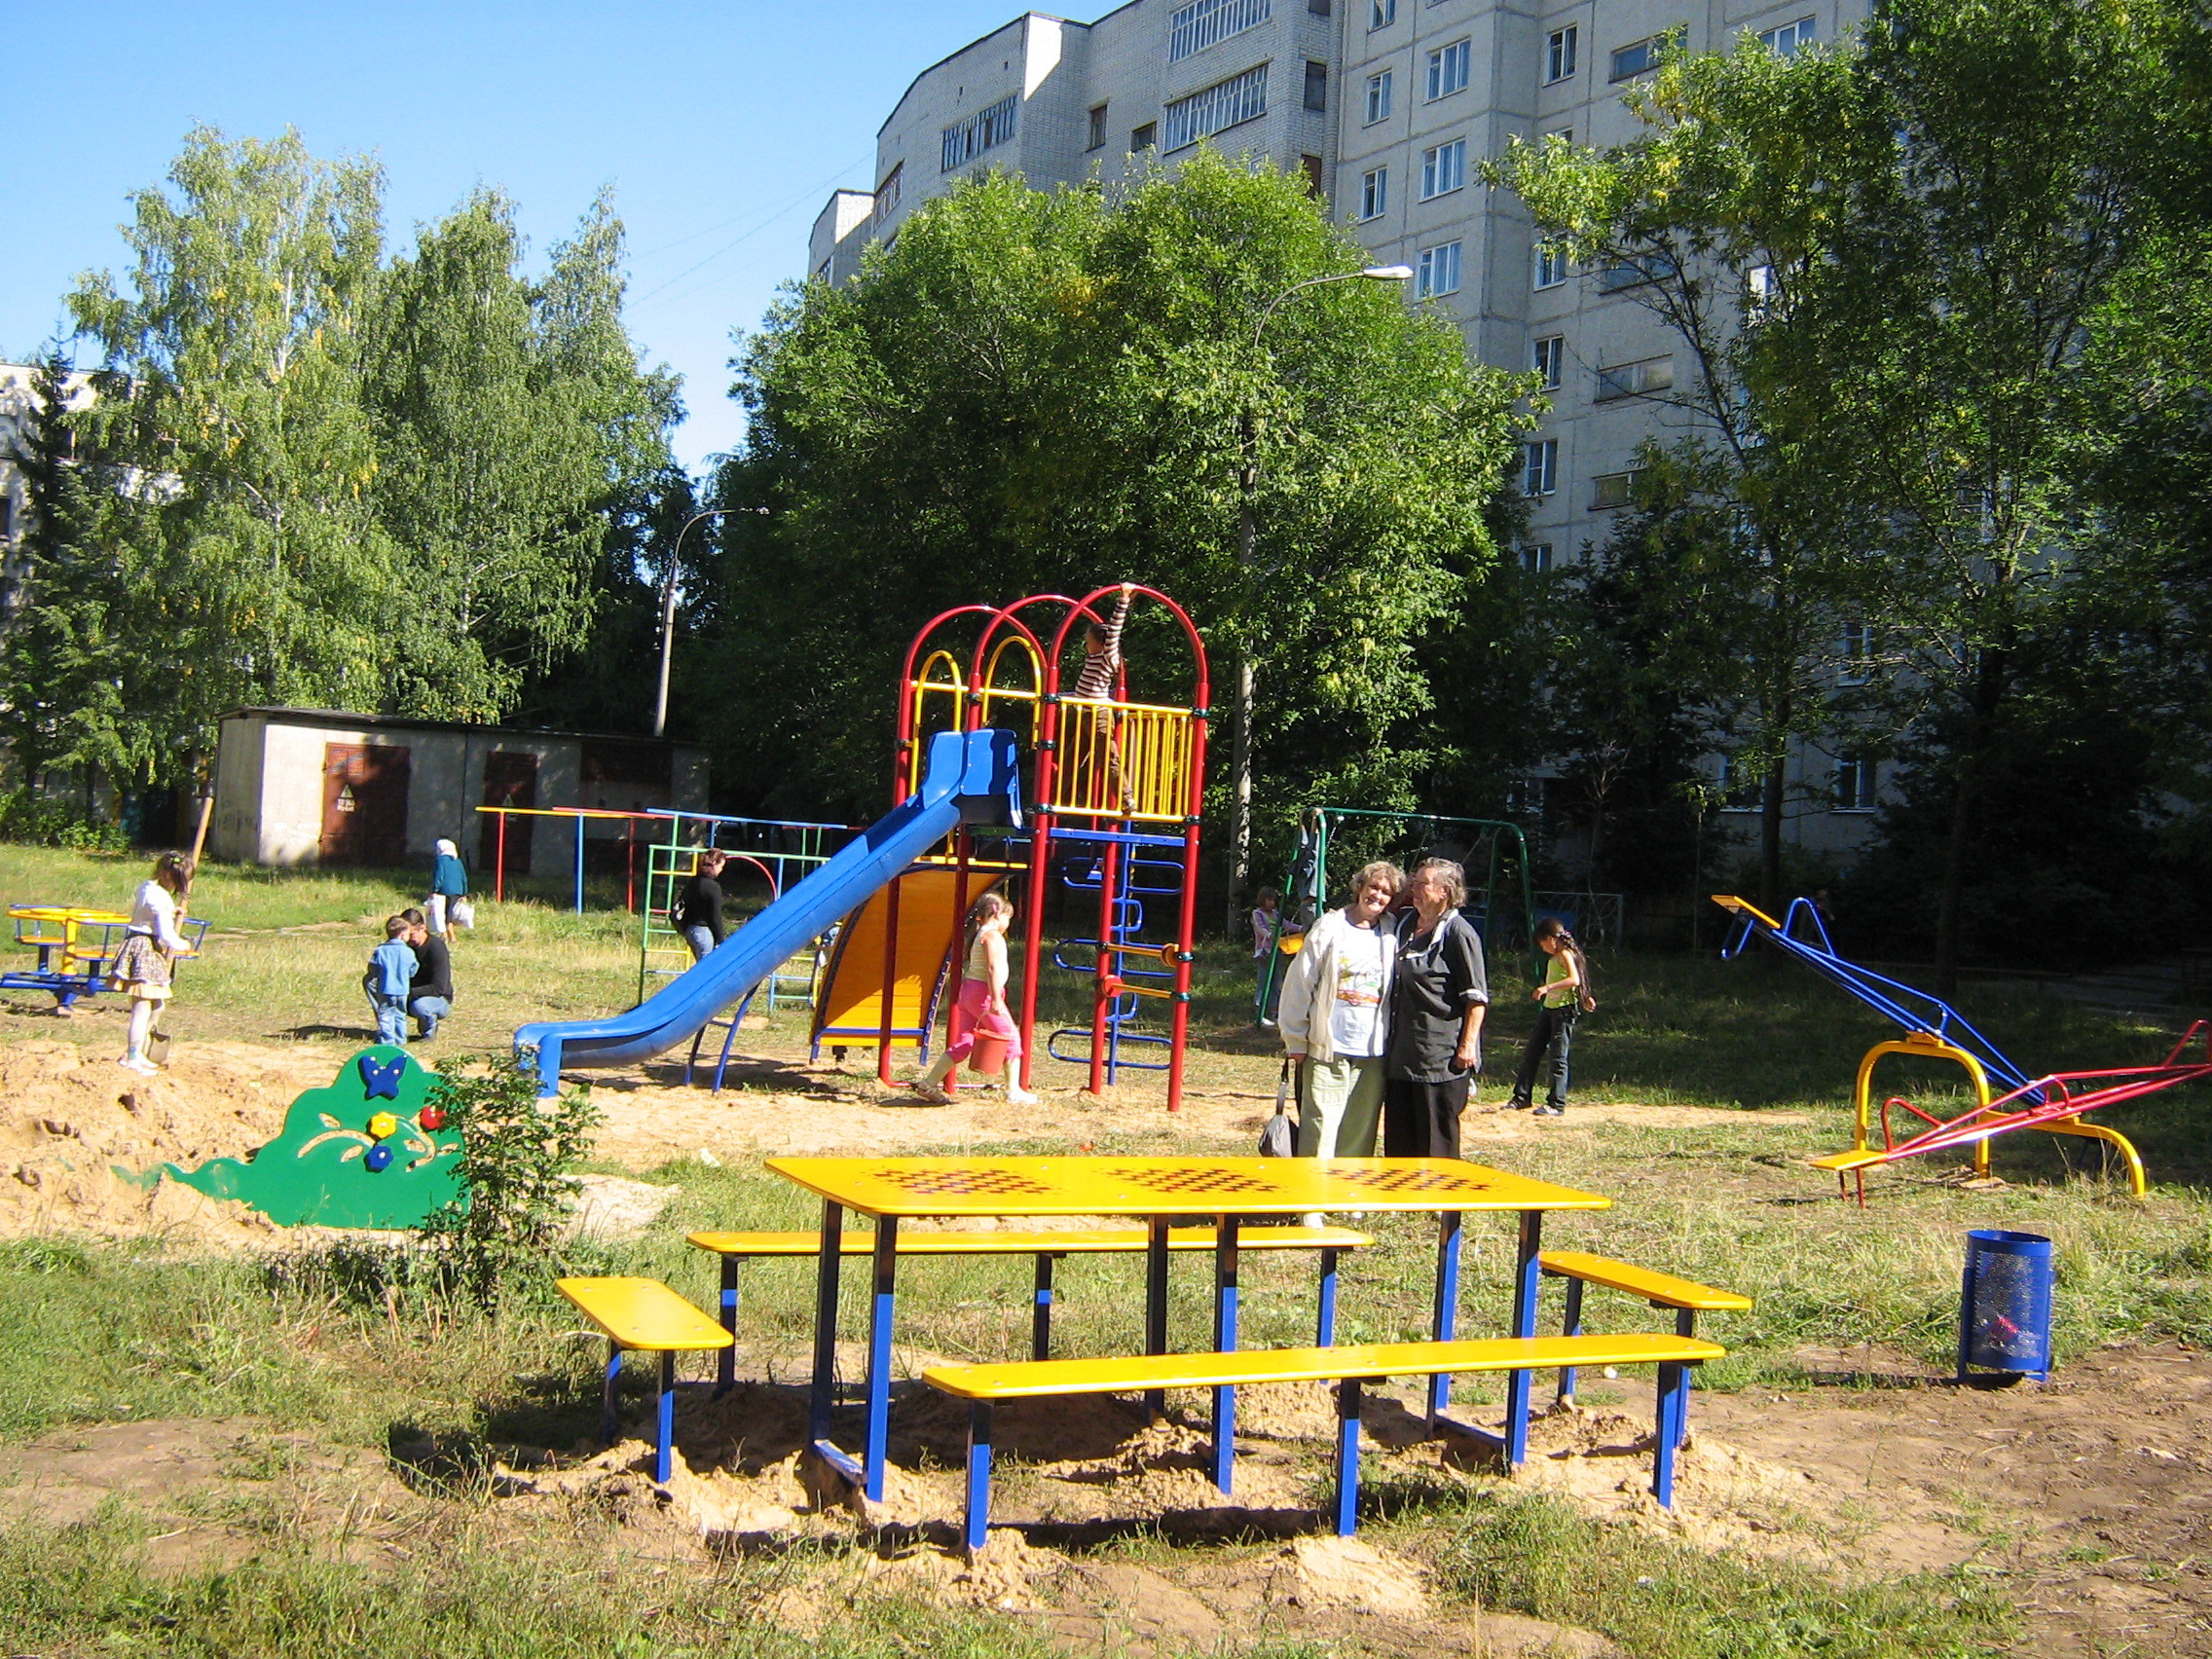 08:28 Московский район г. Чебоксары: новая детская площадка стала украшением и гордостью двора